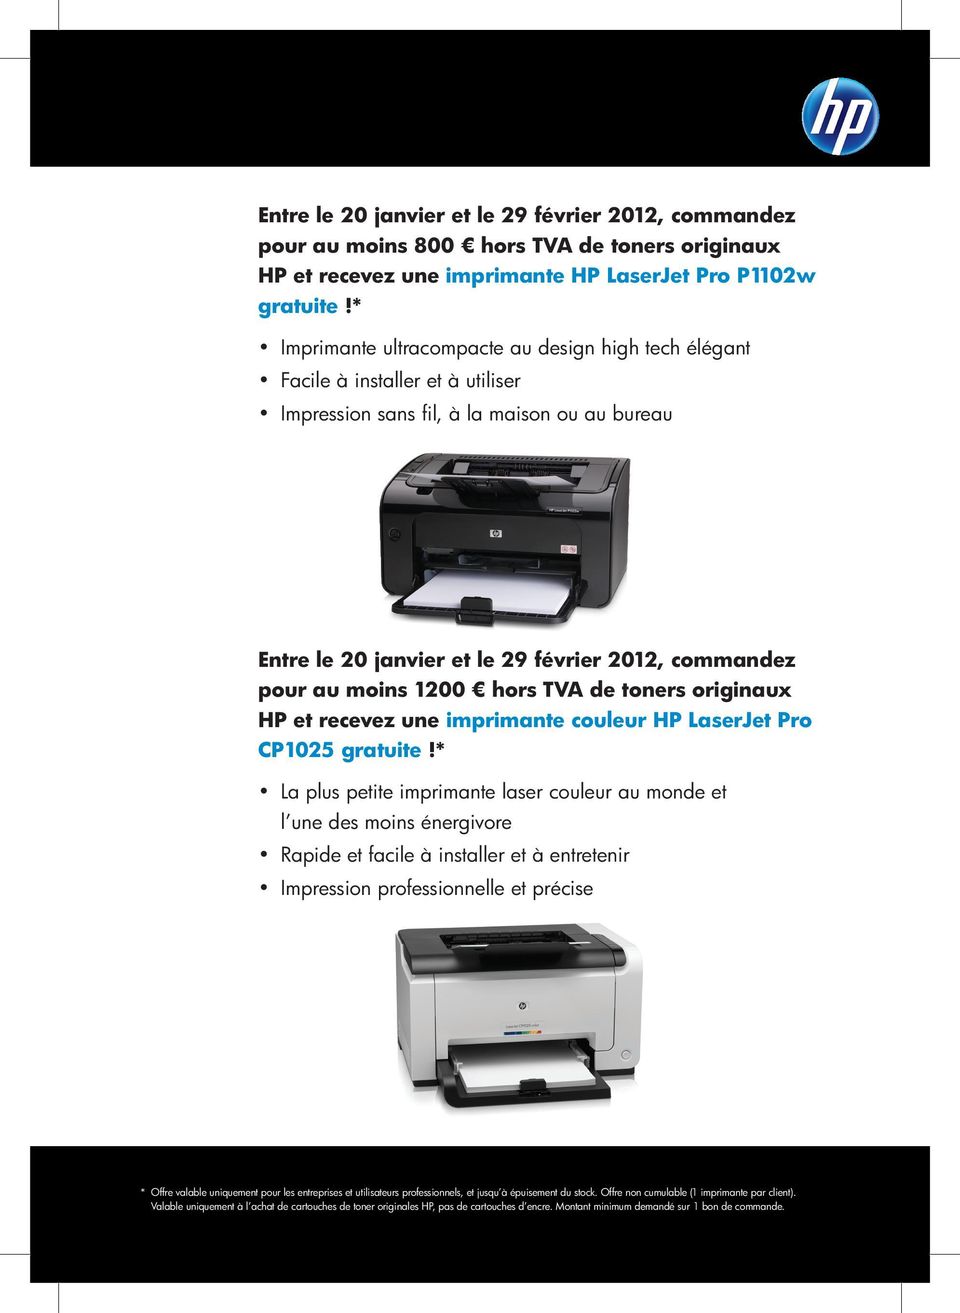 moins 1200 hors TVA de toners originaux HP et recevez une imprimante couleur HP LaserJet Pro CP1025 gratuite!